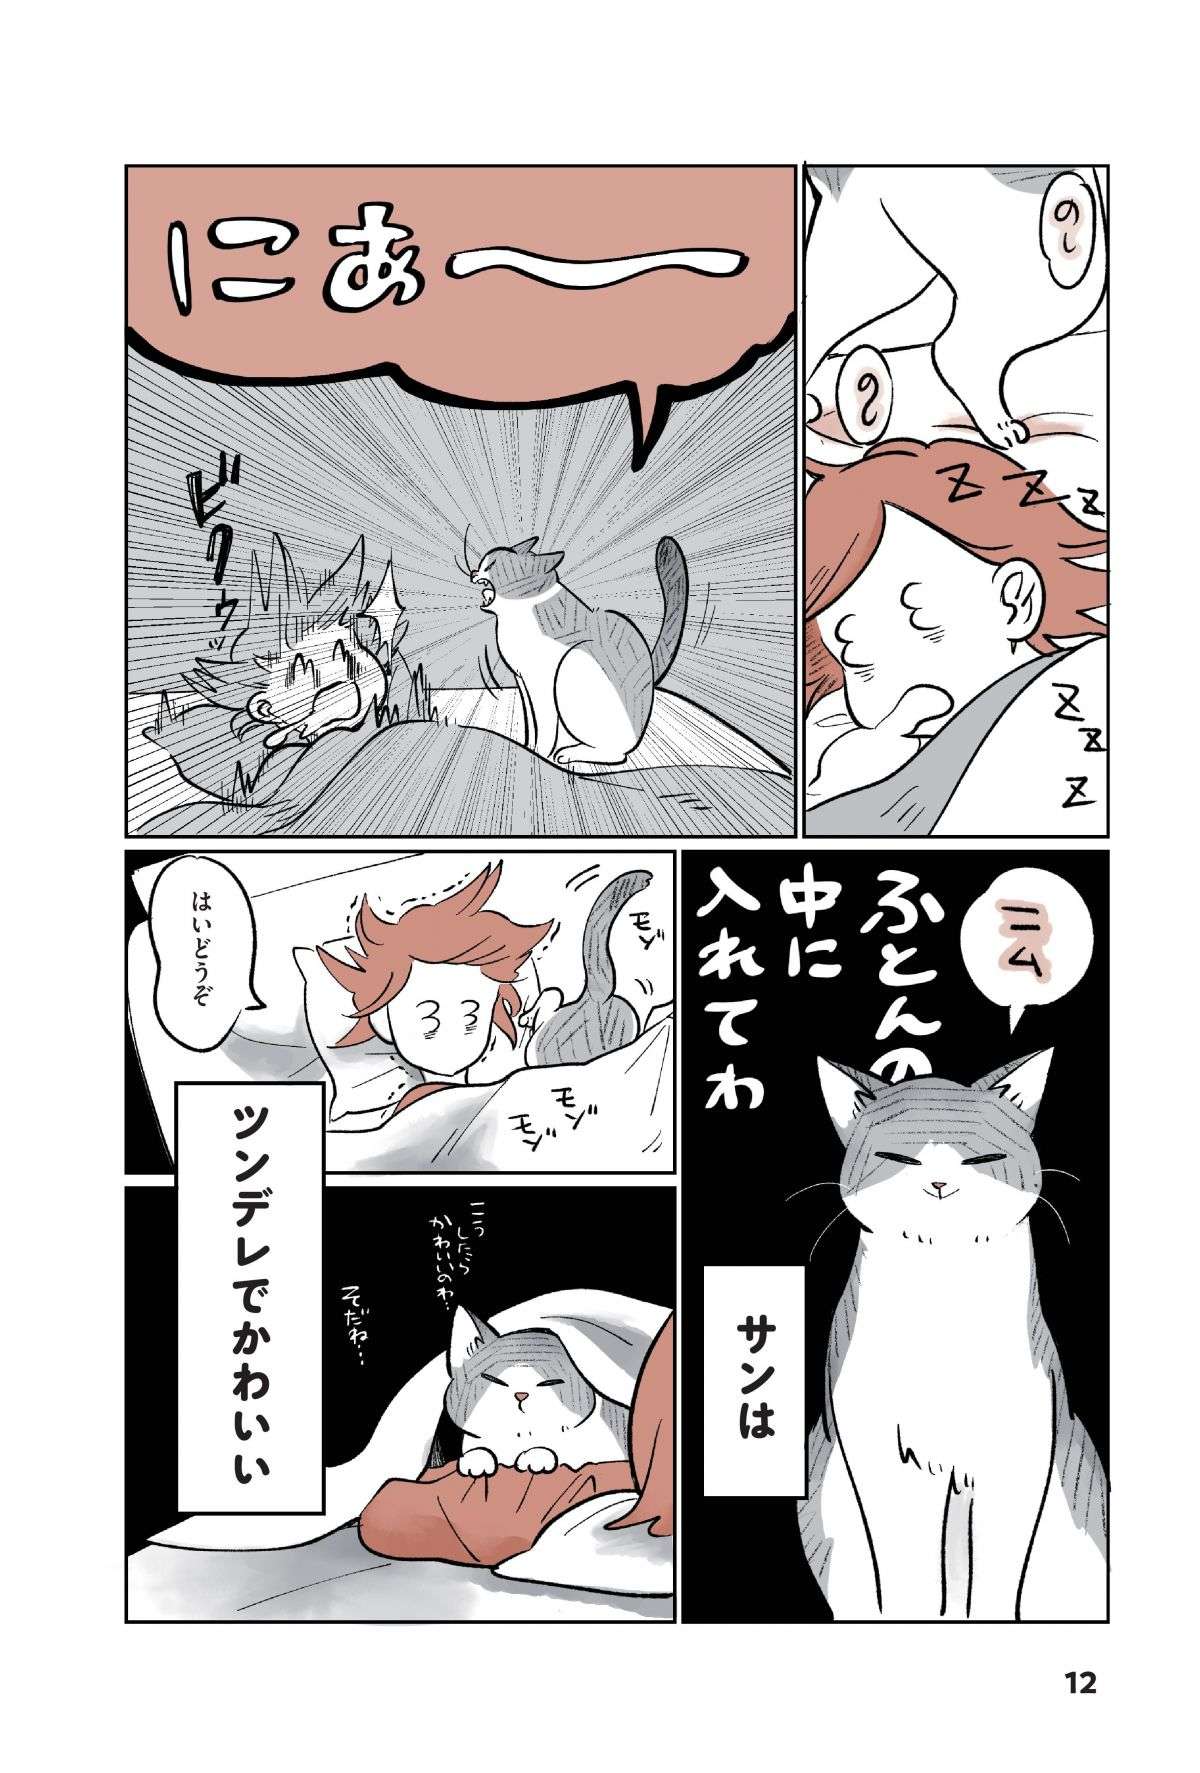 「猫がかわいすぎて仕事やめたい」猫の飼い主が鬼の速さで退勤する「切実な理由」／こねこのドレイ koneko_dorei1-8.jpg